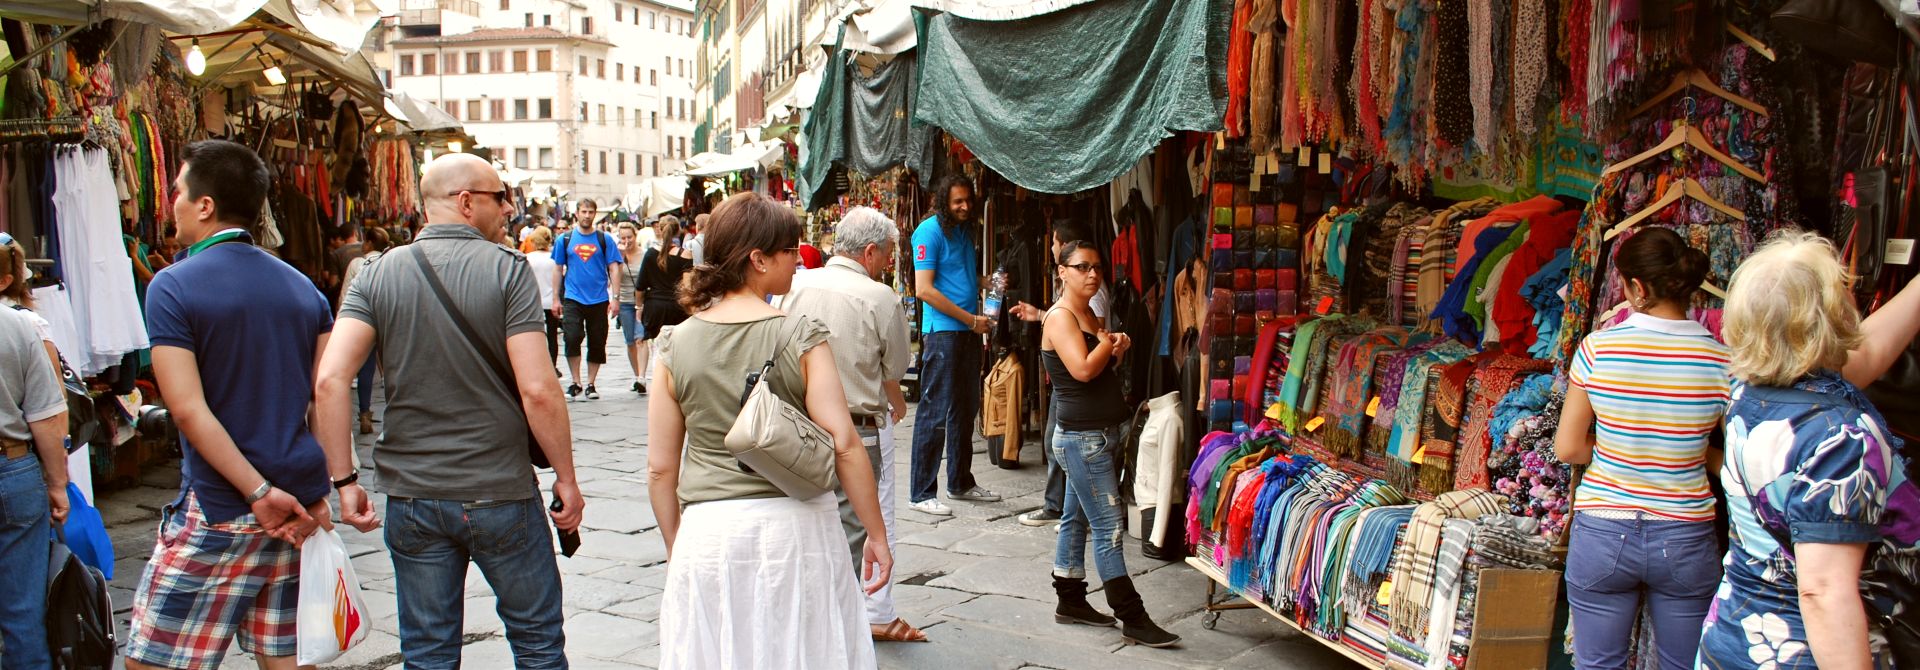 San Lorenzo Market Florence